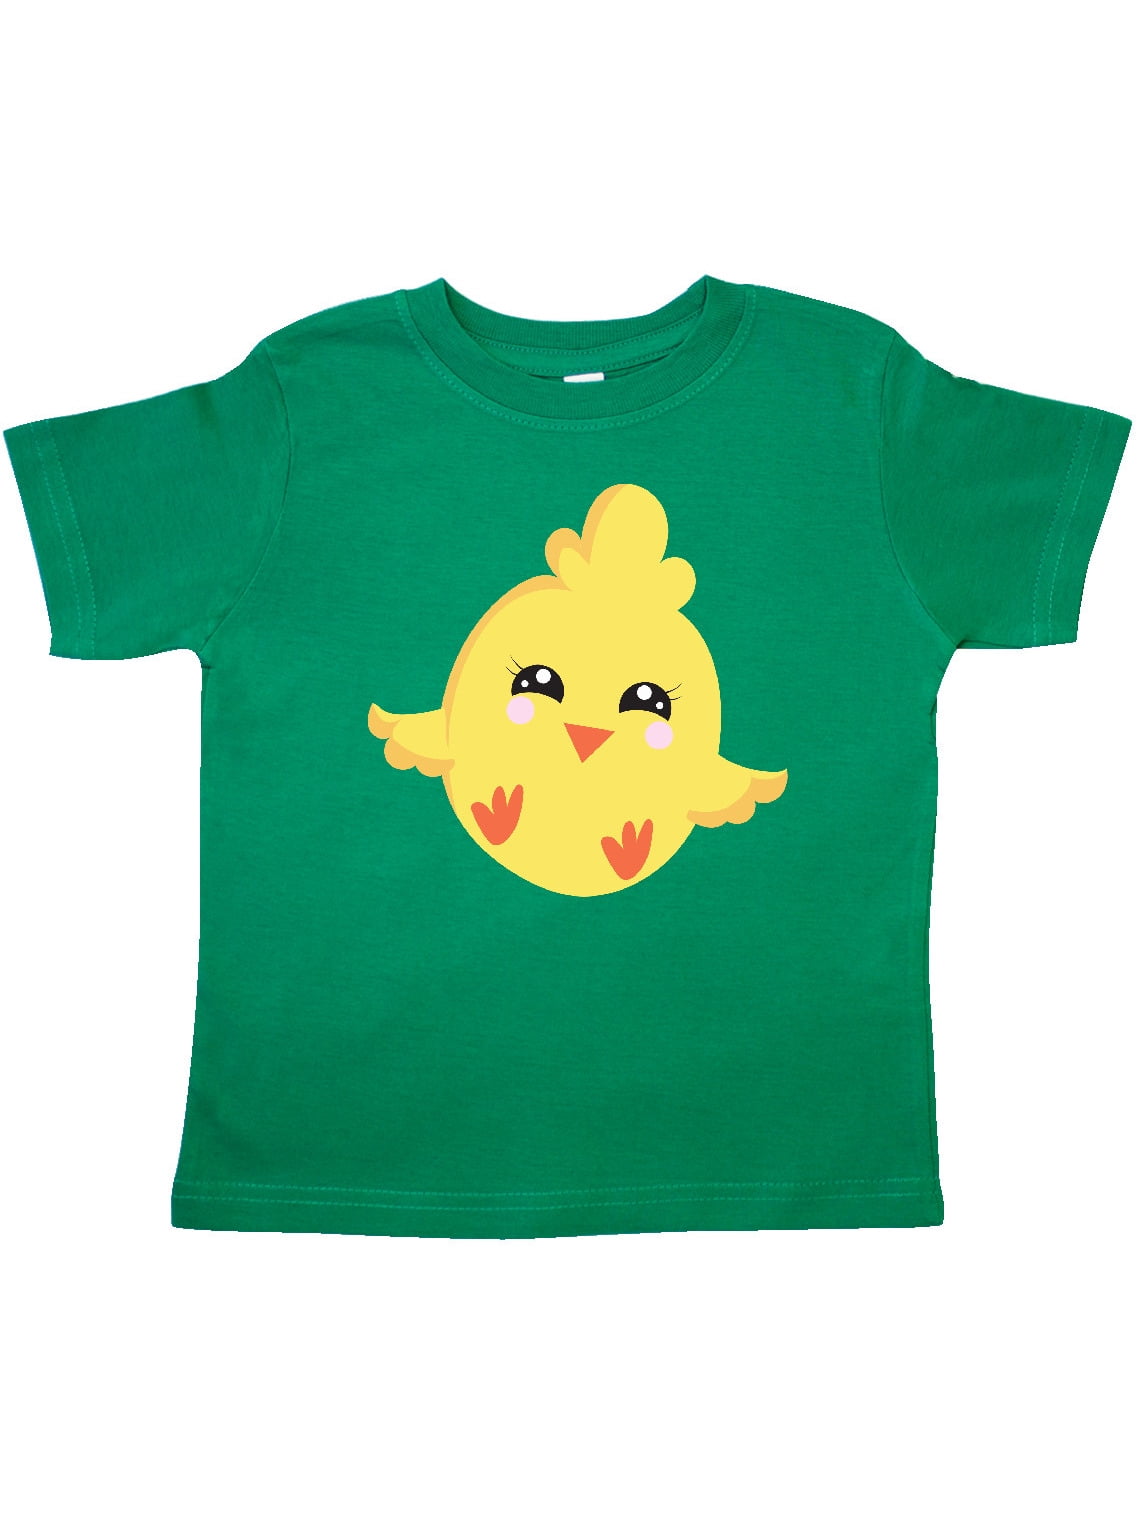 INKtastic - Yellow Chicken, Cute Chicken, Little Chicken Toddler T ...